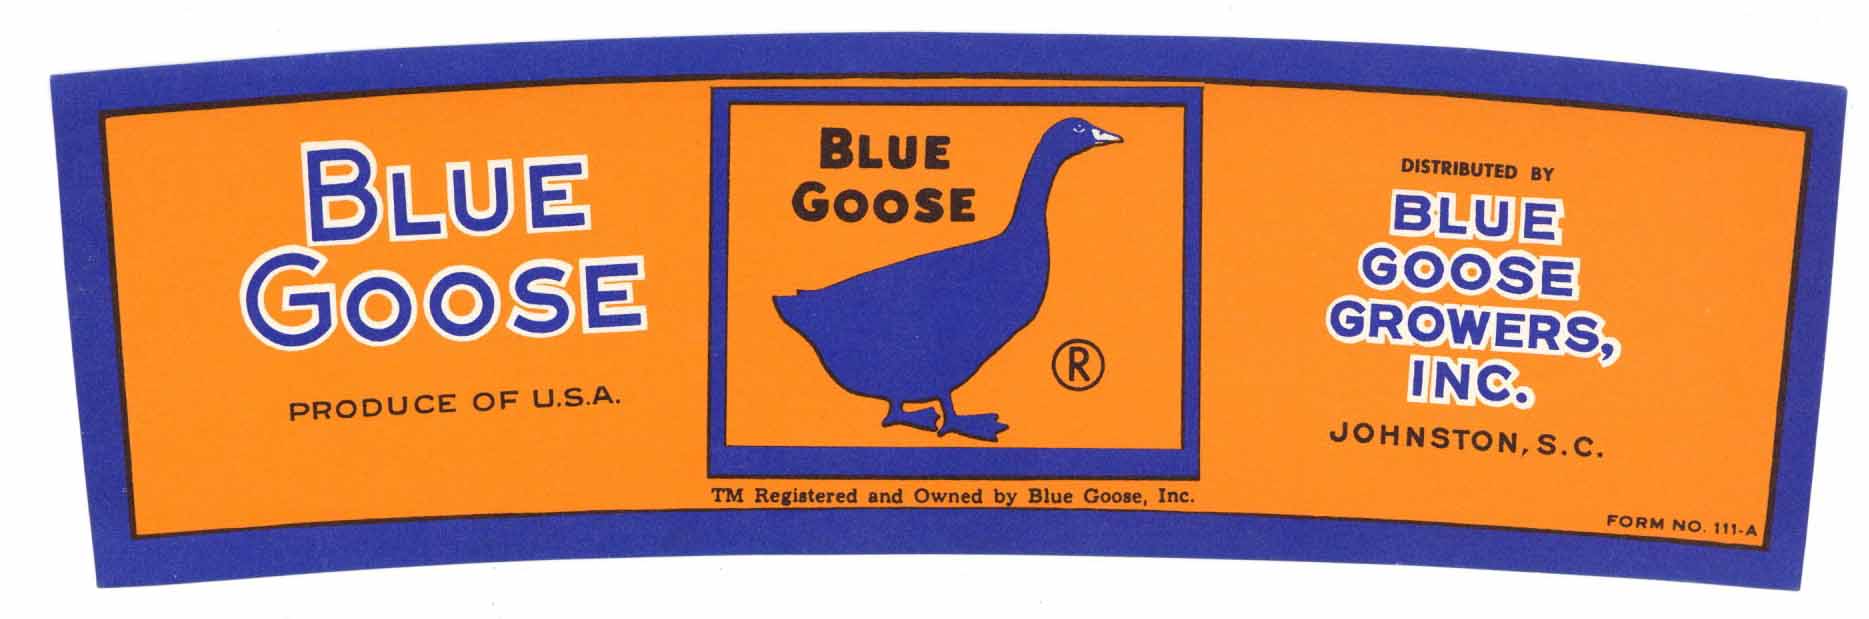 Blue Goose Brand Vintage Johnston South Carolina Crate Label